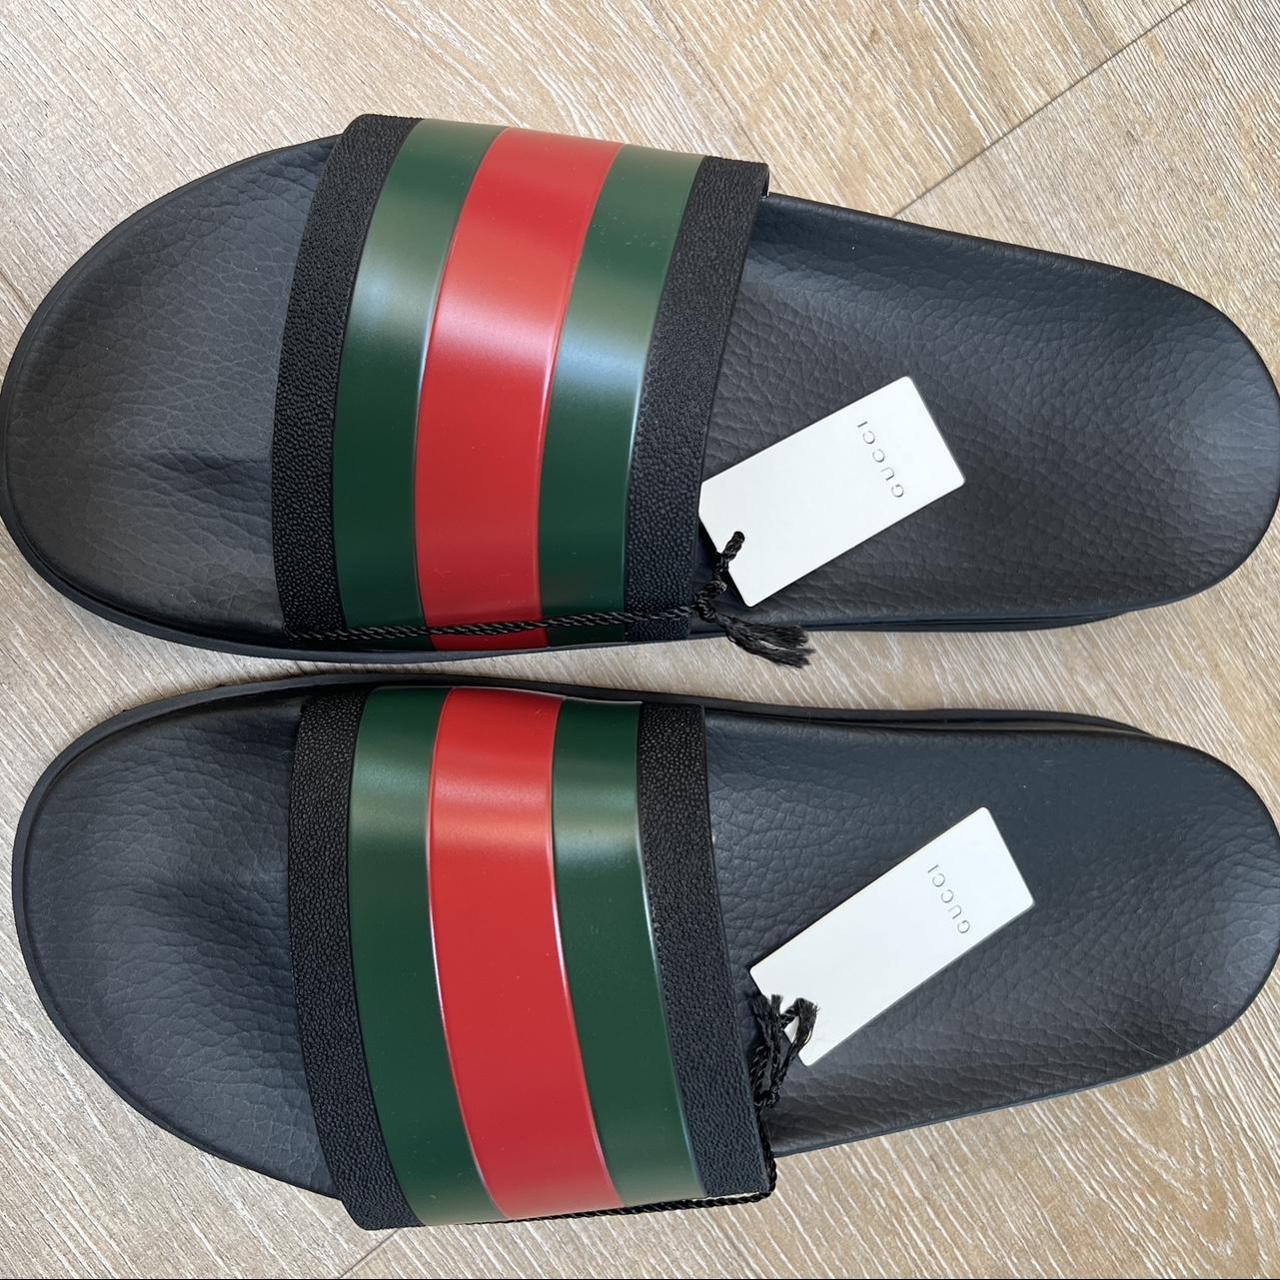 New, never worn Gucci slides!🖤 Size 12 UK, 13... - Depop